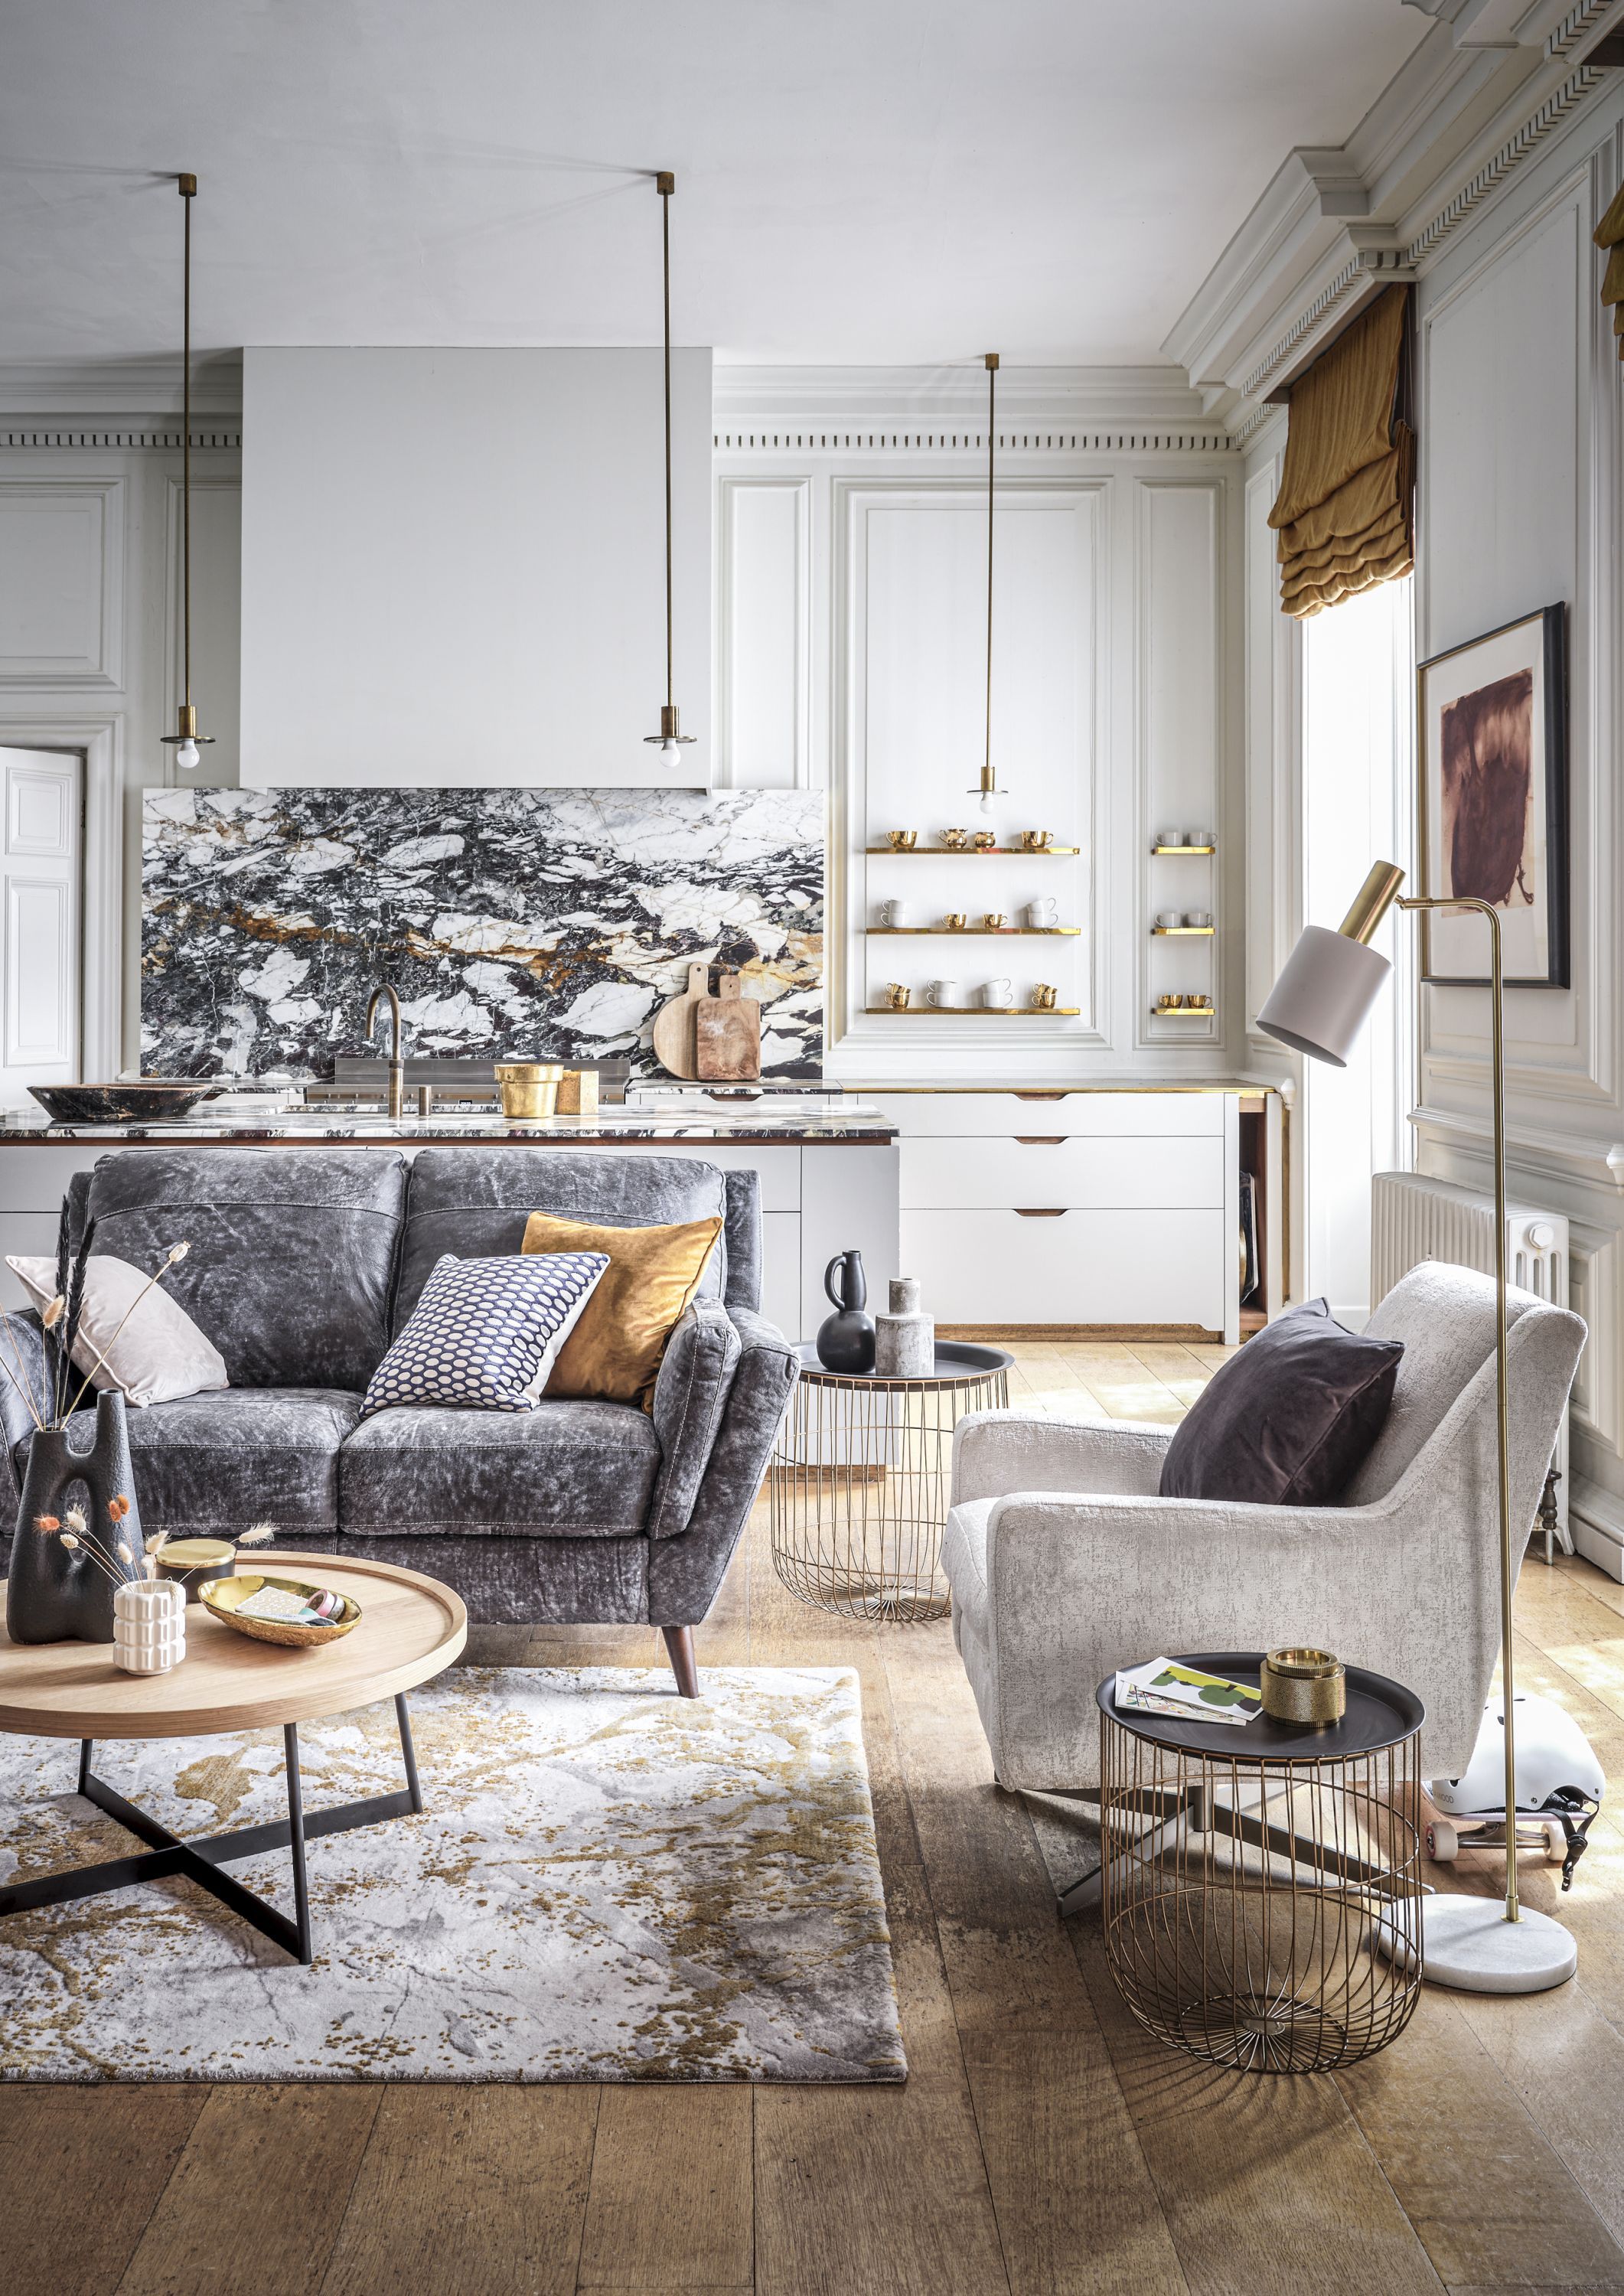 Phòng Khách Living Room Decor In Grey Gợi ý Cho Trang Trí Phòng Khách